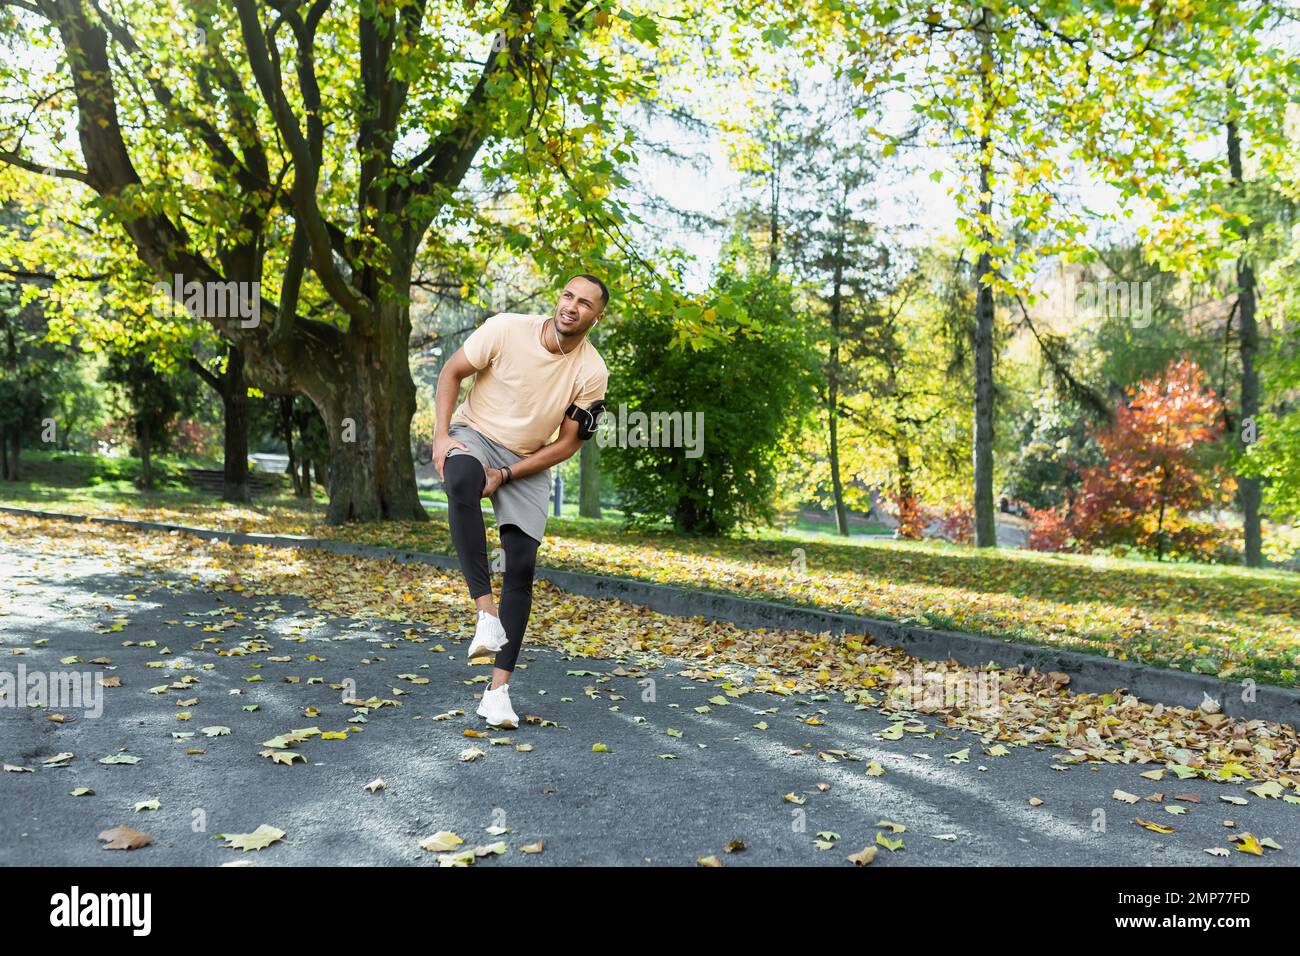 Giovane atleta afro-americano maschile che fa una corsa mattutina nel parco. Ferì il ginocchio, allungò i muscoli, si alza tenendo la gamba, sente dolore grave. Foto Stock